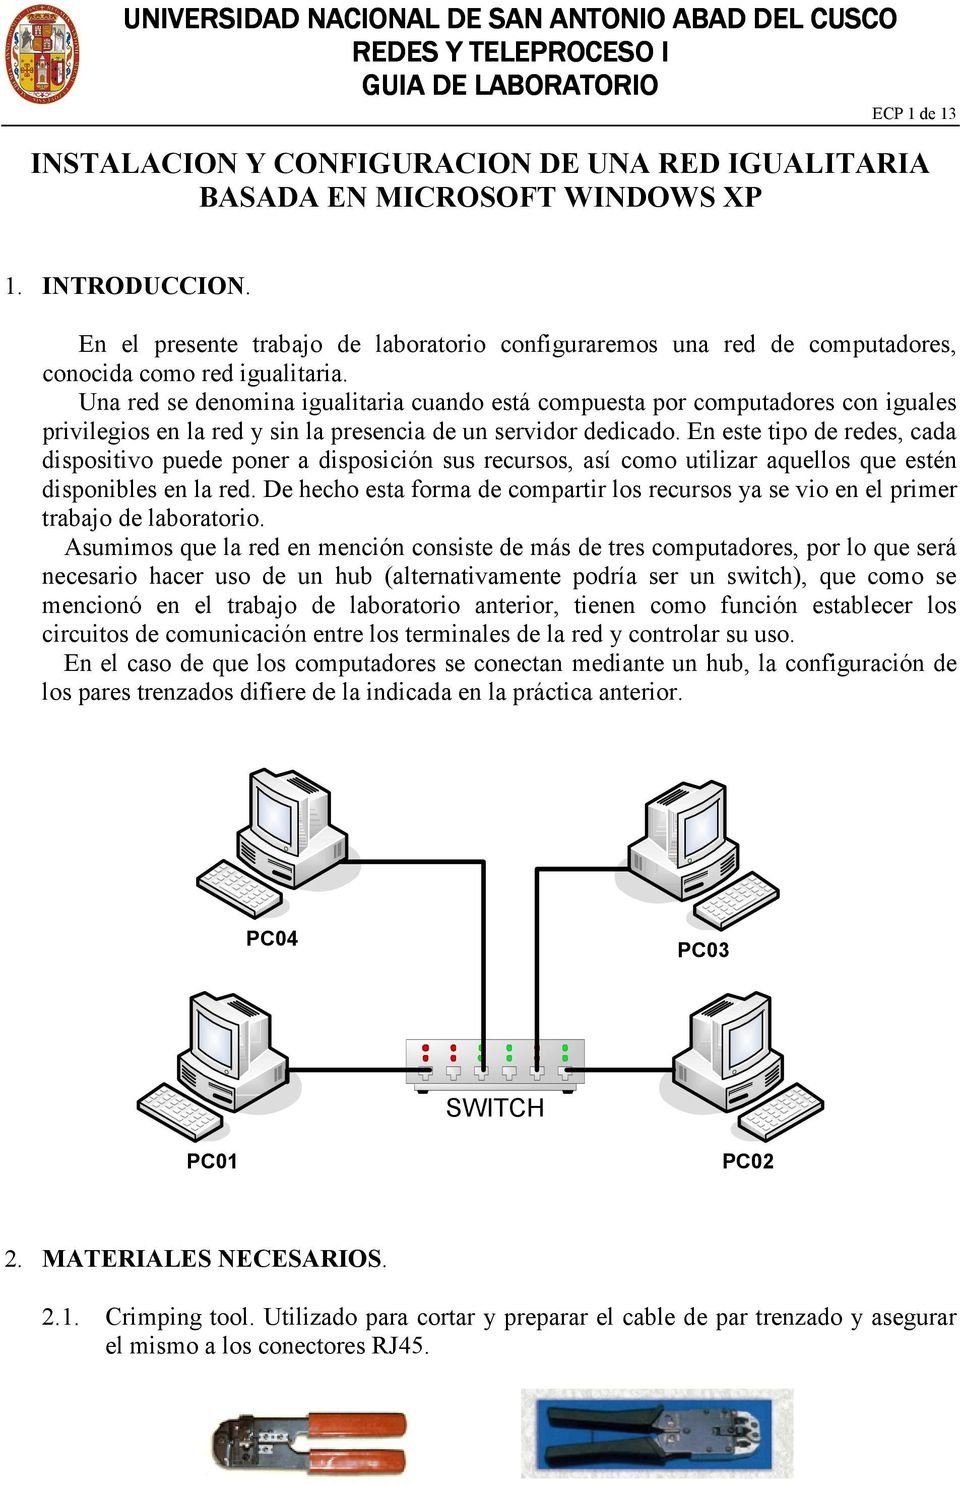 Una red se denomina igualitaria cuando está compuesta por computadores con iguales privilegios en la red y sin la presencia de un servidor dedicado.